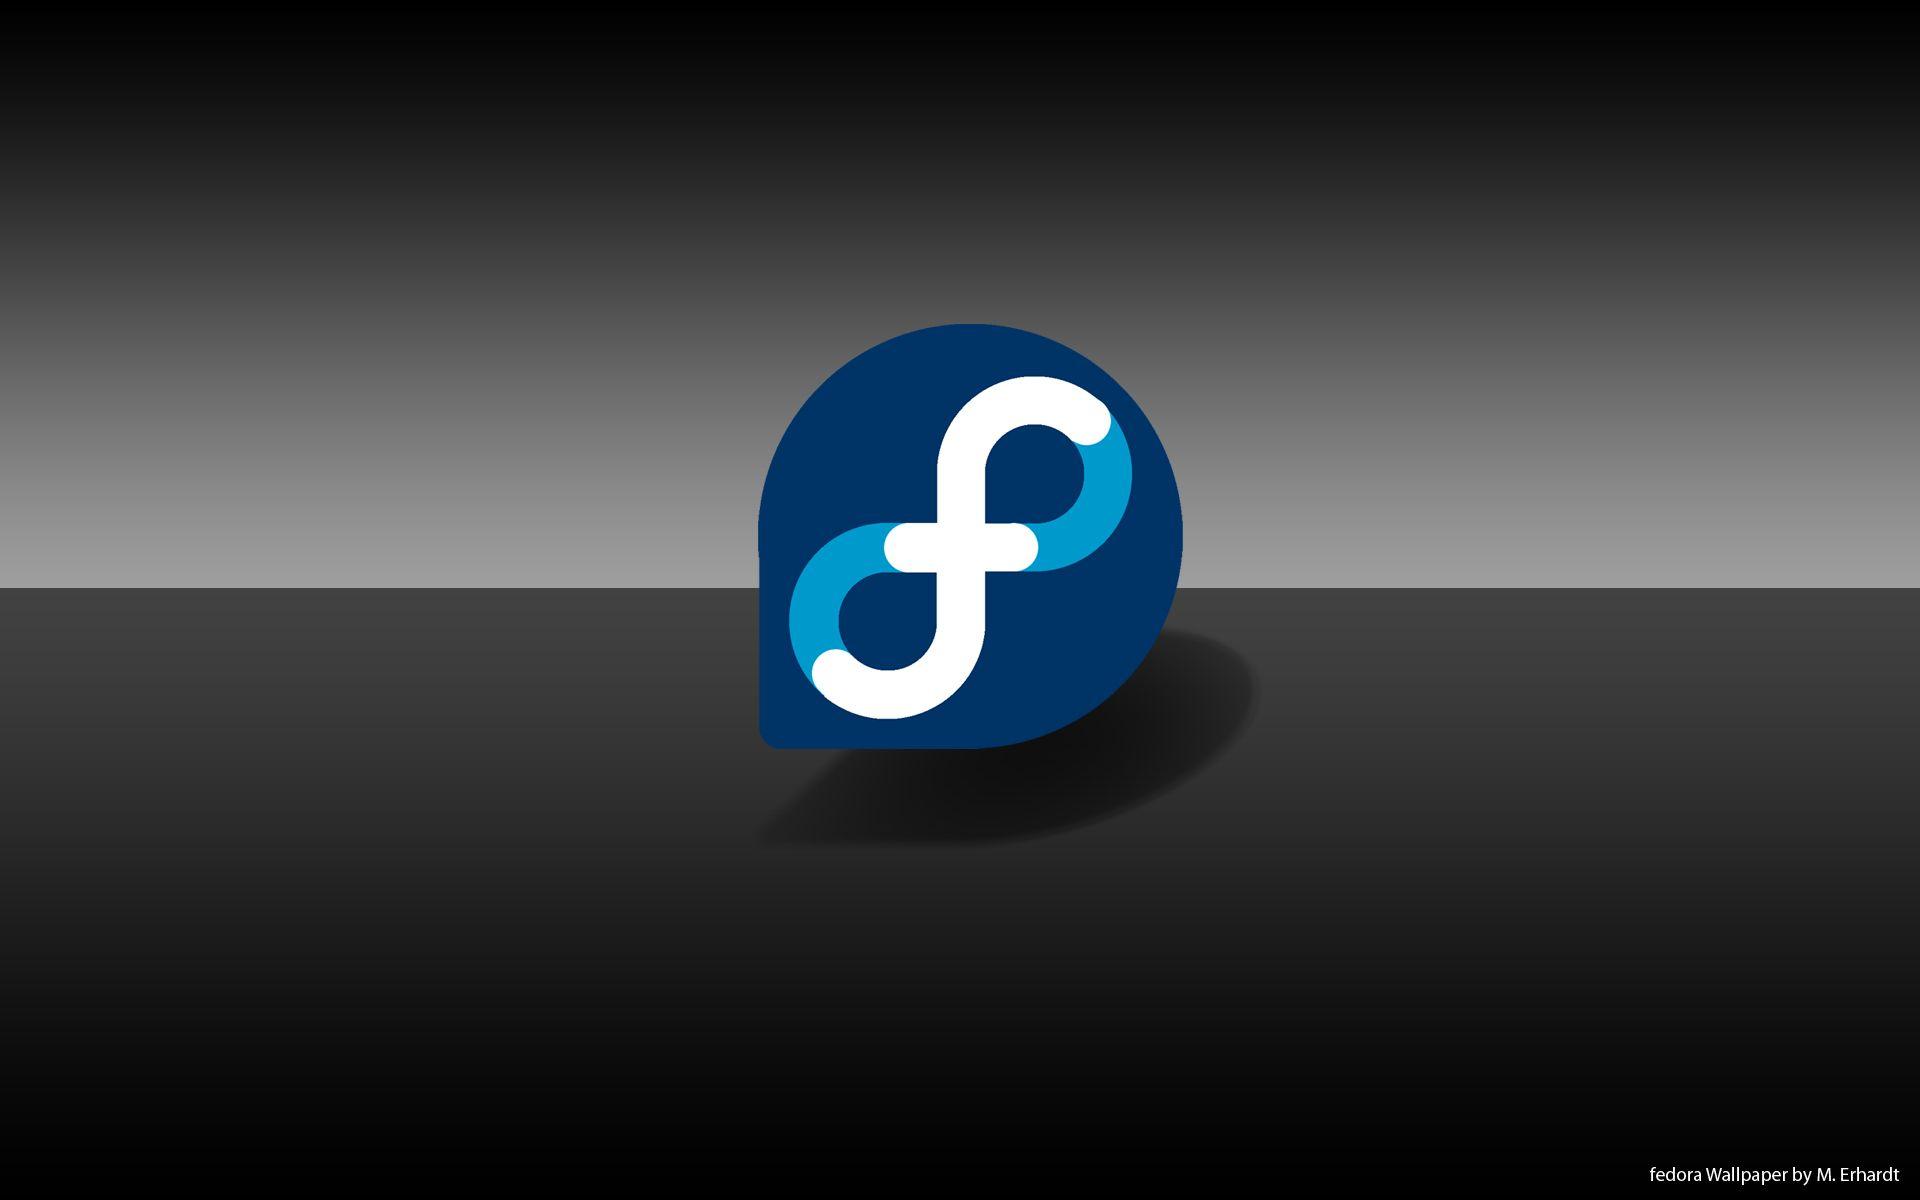 Download wallpapers Fedora blue logo, 4k, blue brickwall, Linux, Fedora  logo, OS, Fedora neon logo, Fedora for desktop free. Pictures for desktop  free